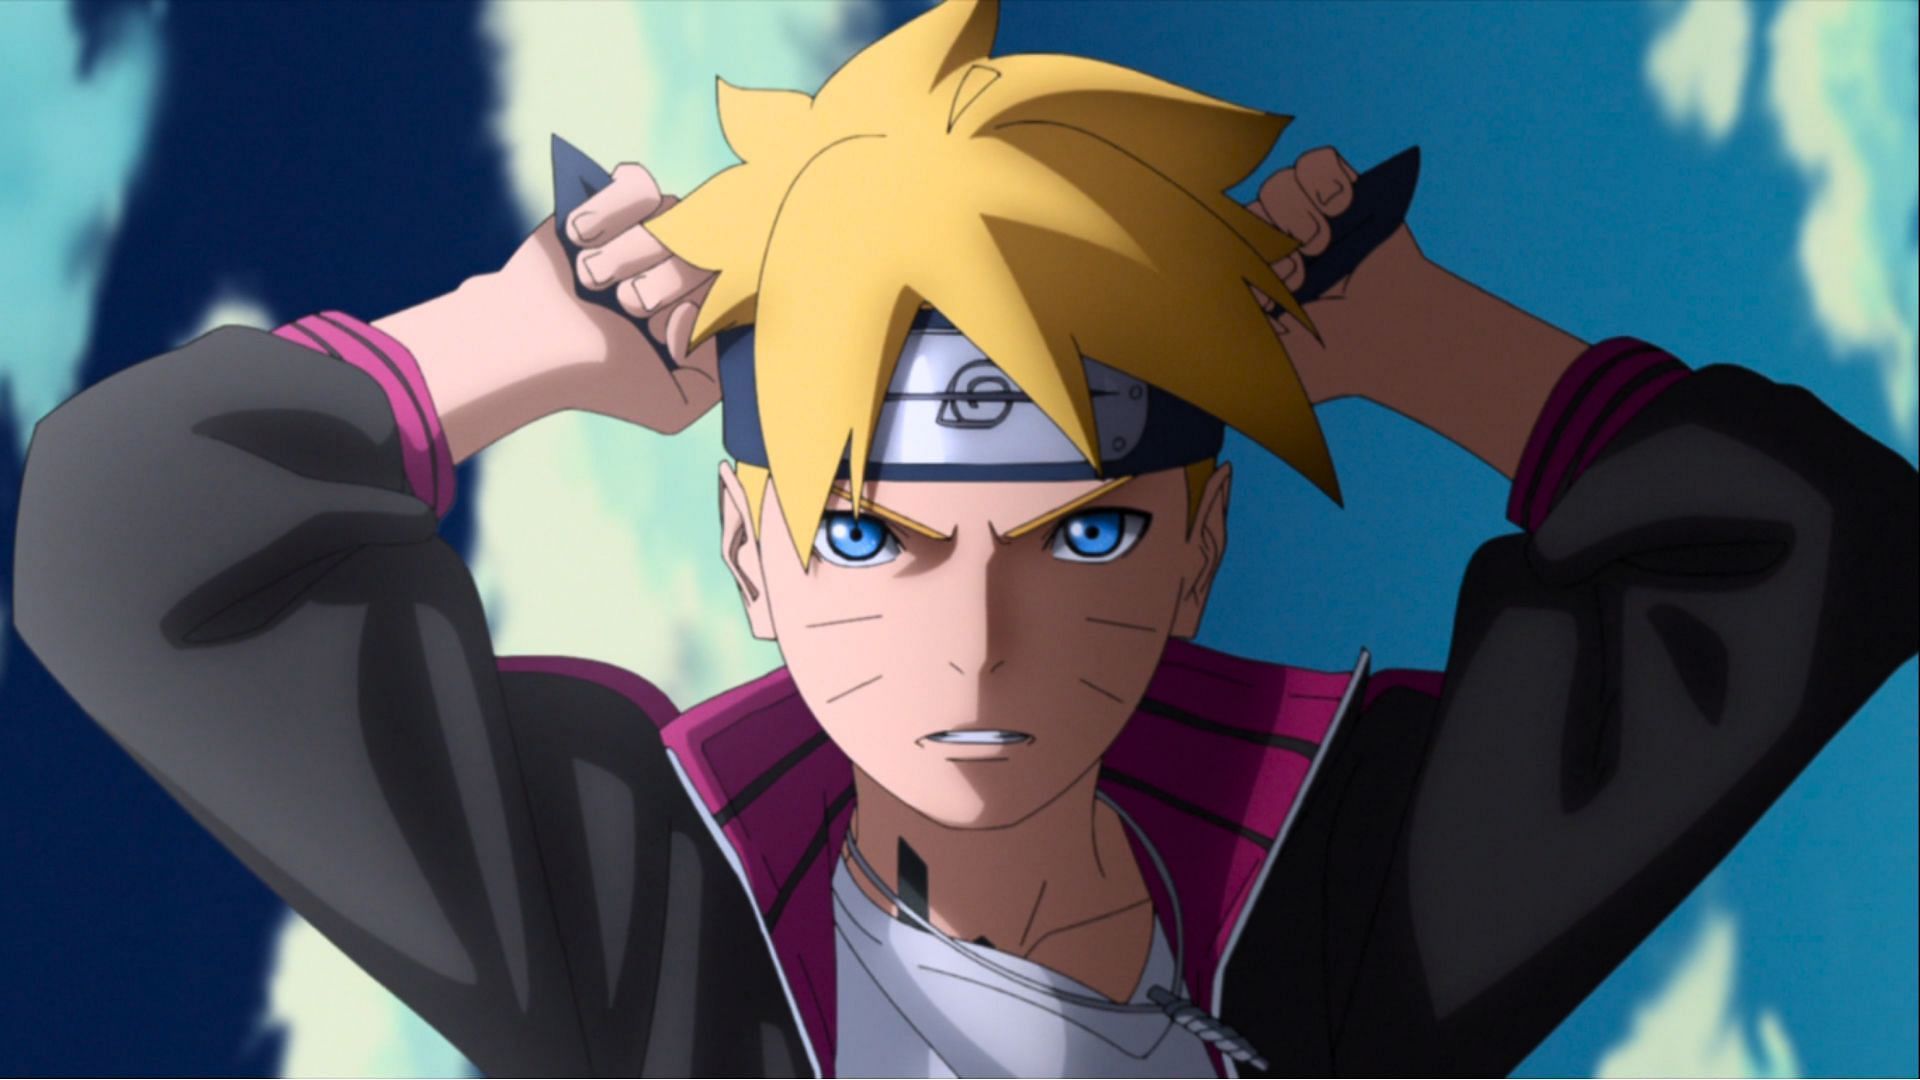 Naruto Reveals Major New Boruto Episode Titles